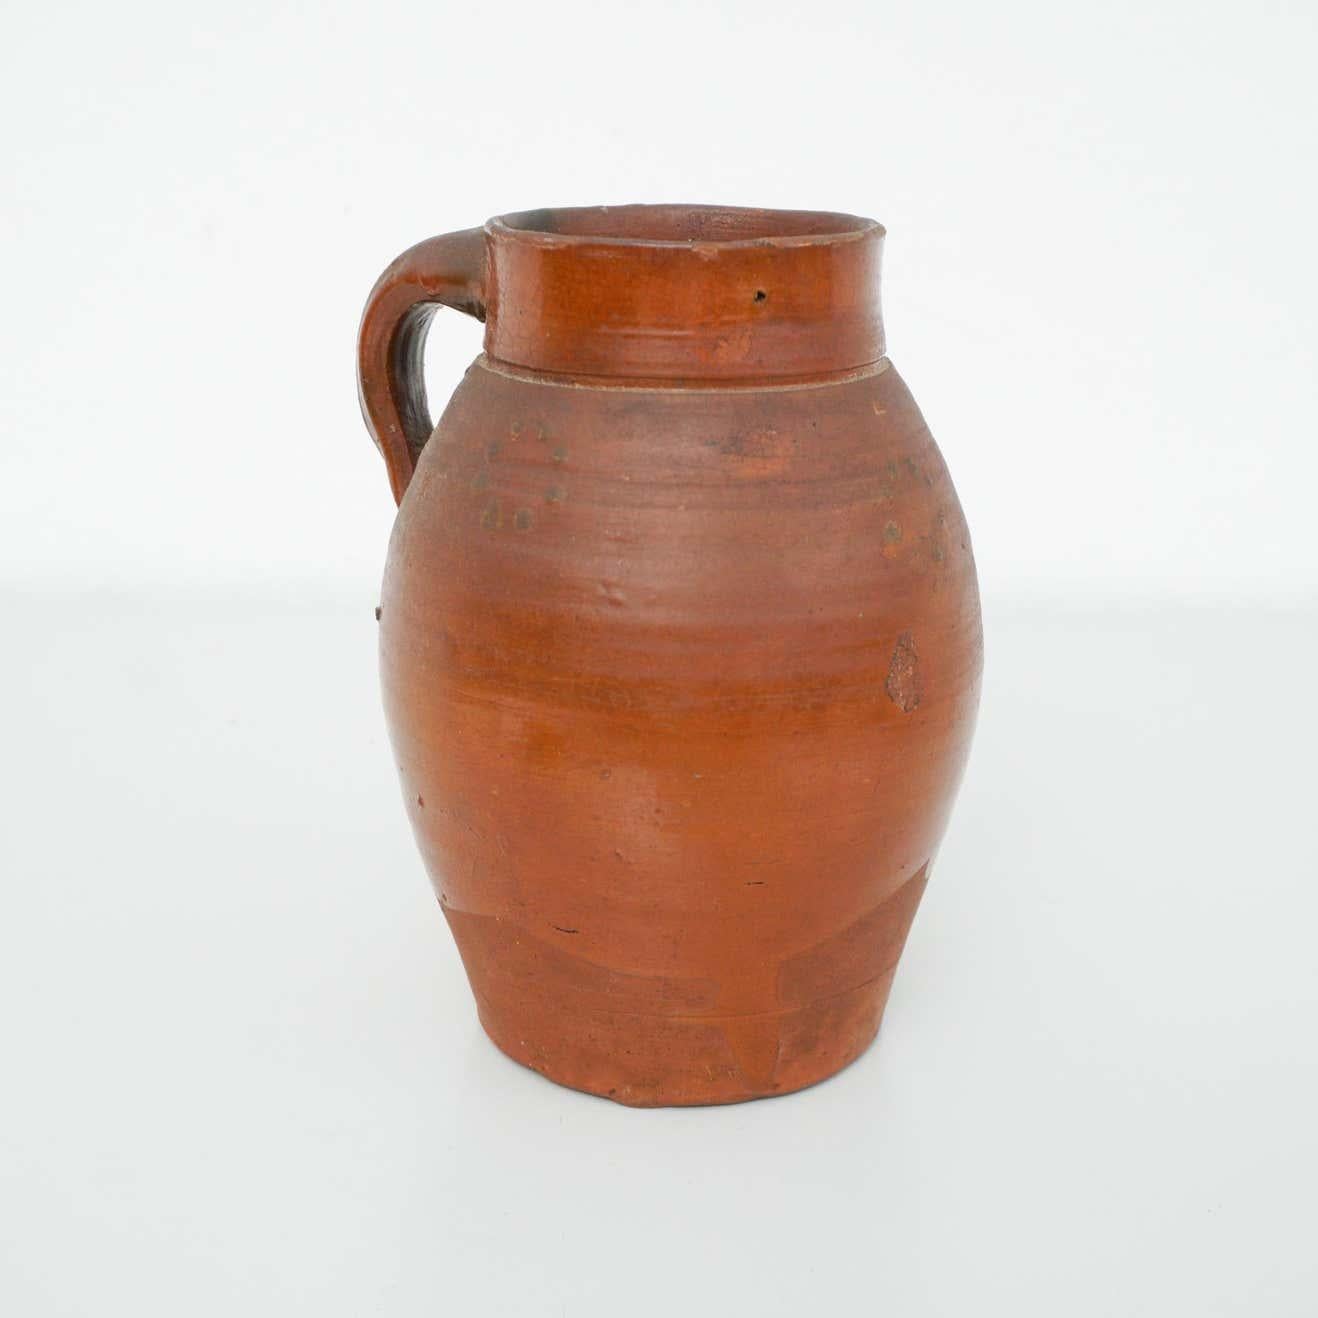 Anfang des 20. Jahrhunderts Traditioneller spanischer Keramikkrug

Originaler Zustand mit geringen alters- und gebrauchsbedingten Abnutzungserscheinungen, der eine schöne Patina aufweist.